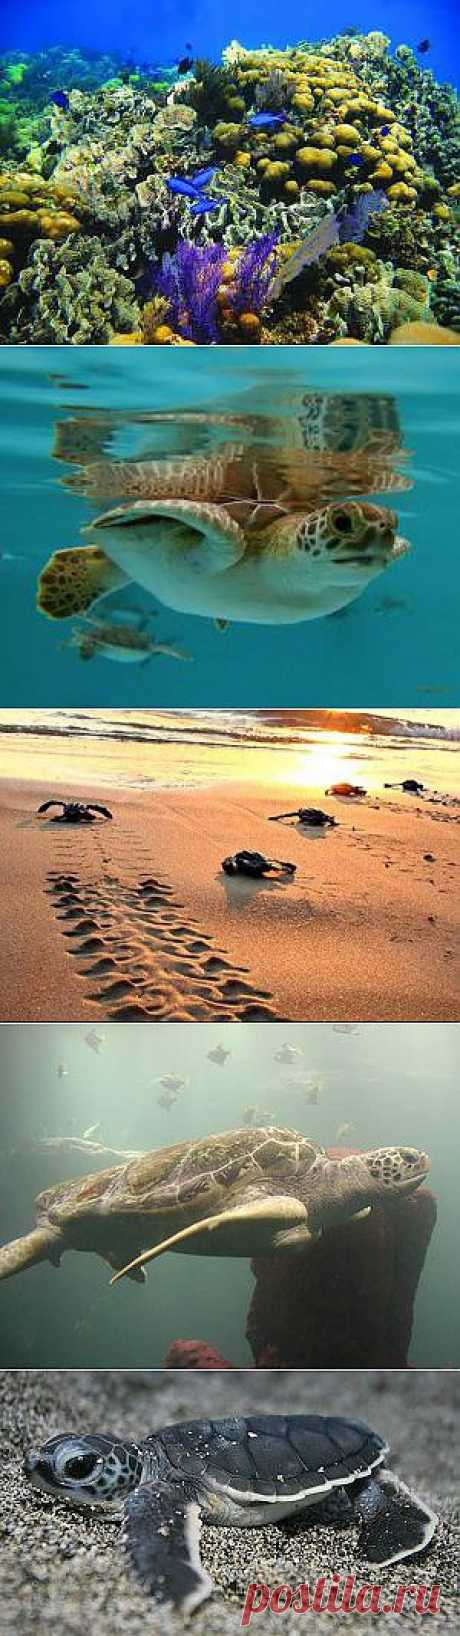 Дайвинг по миру | Дайвинг в Мексике, России, в мире
Удивительные и увлекательные, познавательные и экологические приключения можно встретить сейчас по ночам на 
Мексиканских пляжах. У нас начался сезон, когда черепаха несет яйца на пляже и в то же время вылупляется множество маленьких черепашек. Действие происходит только ночью и больших морских черепах как и маленьких черепашек, бежащих к морю, можно увидеть под светом луны. Приезжайте в Мексику